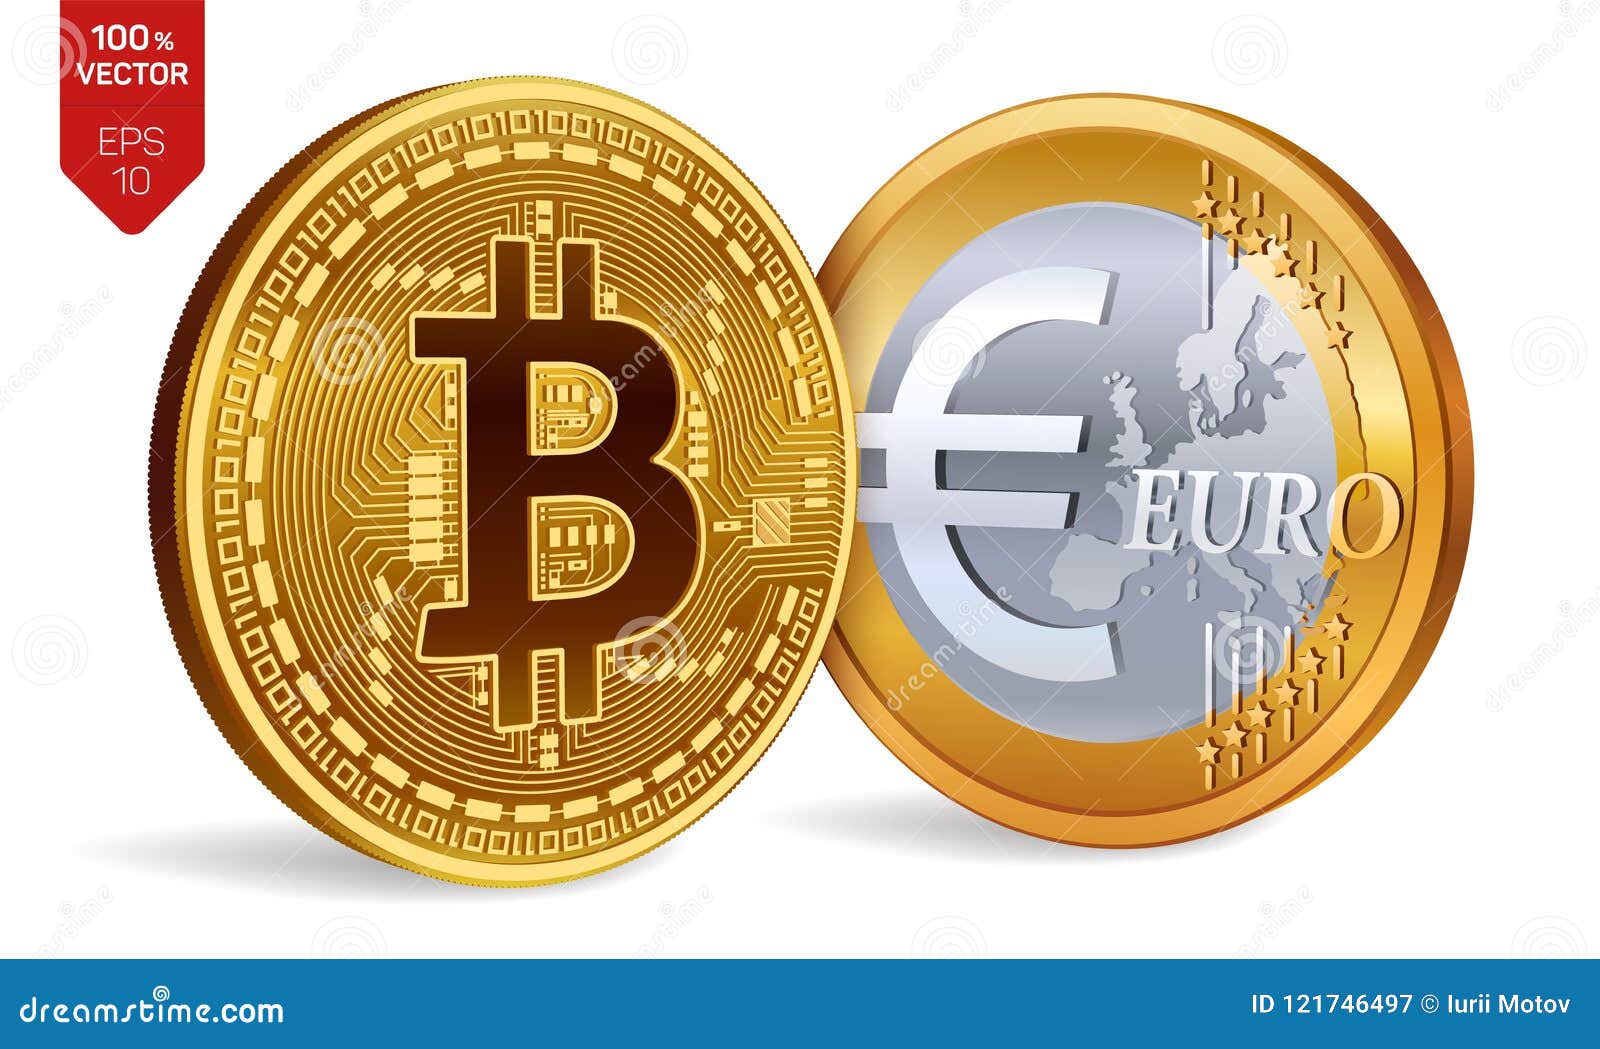 Eurocoin Price Today - EUC Coin Price Chart & Crypto Market Cap